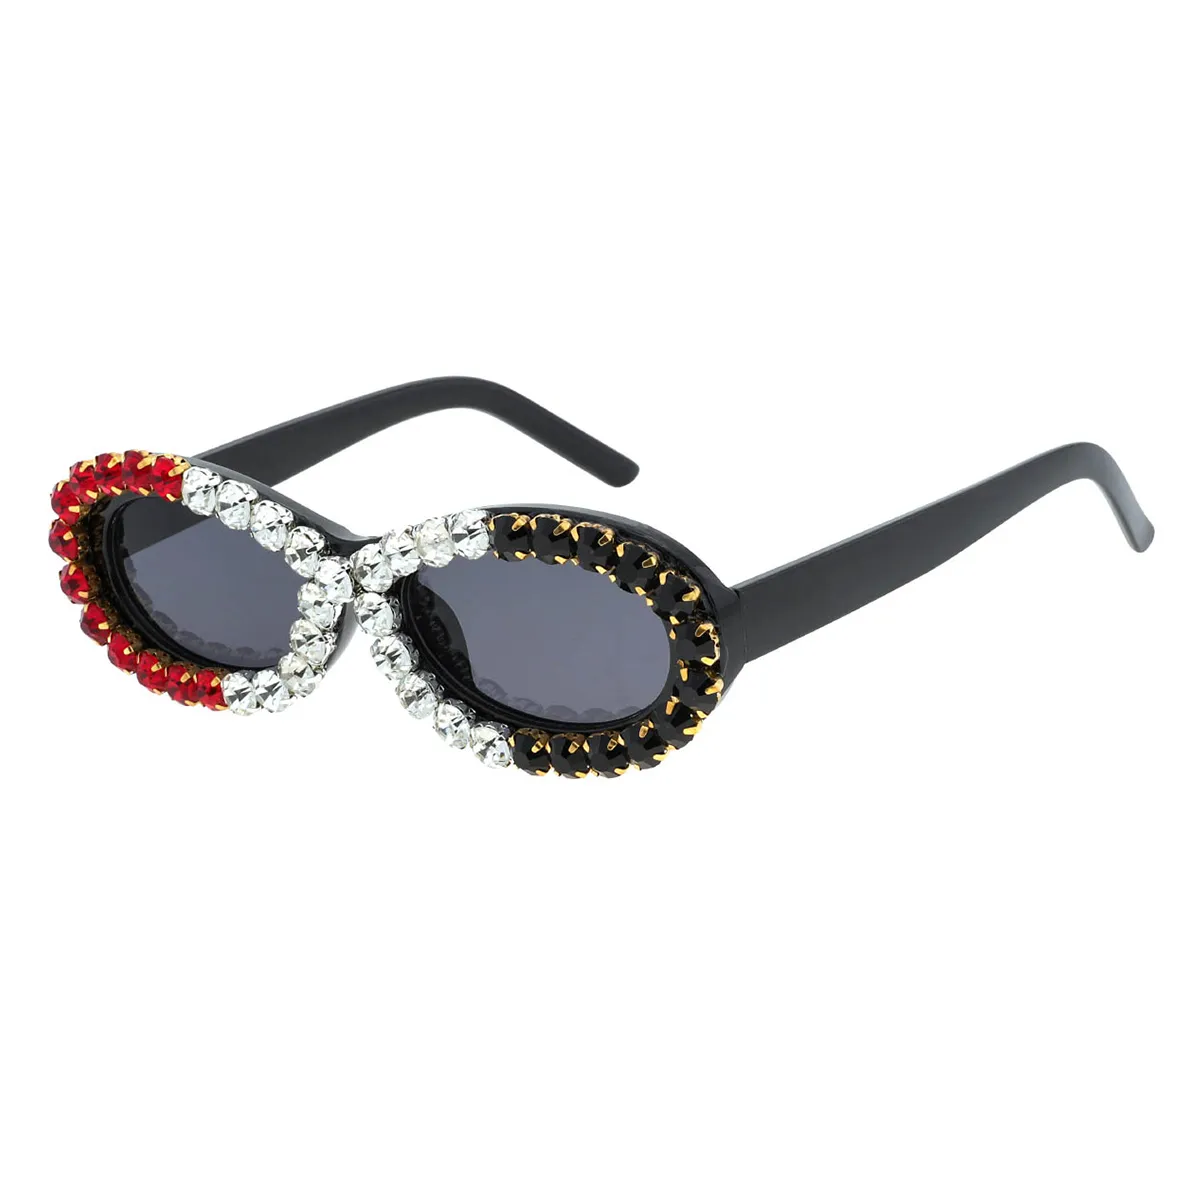 Sibyl - Oval Black/White Sunglasses for Women